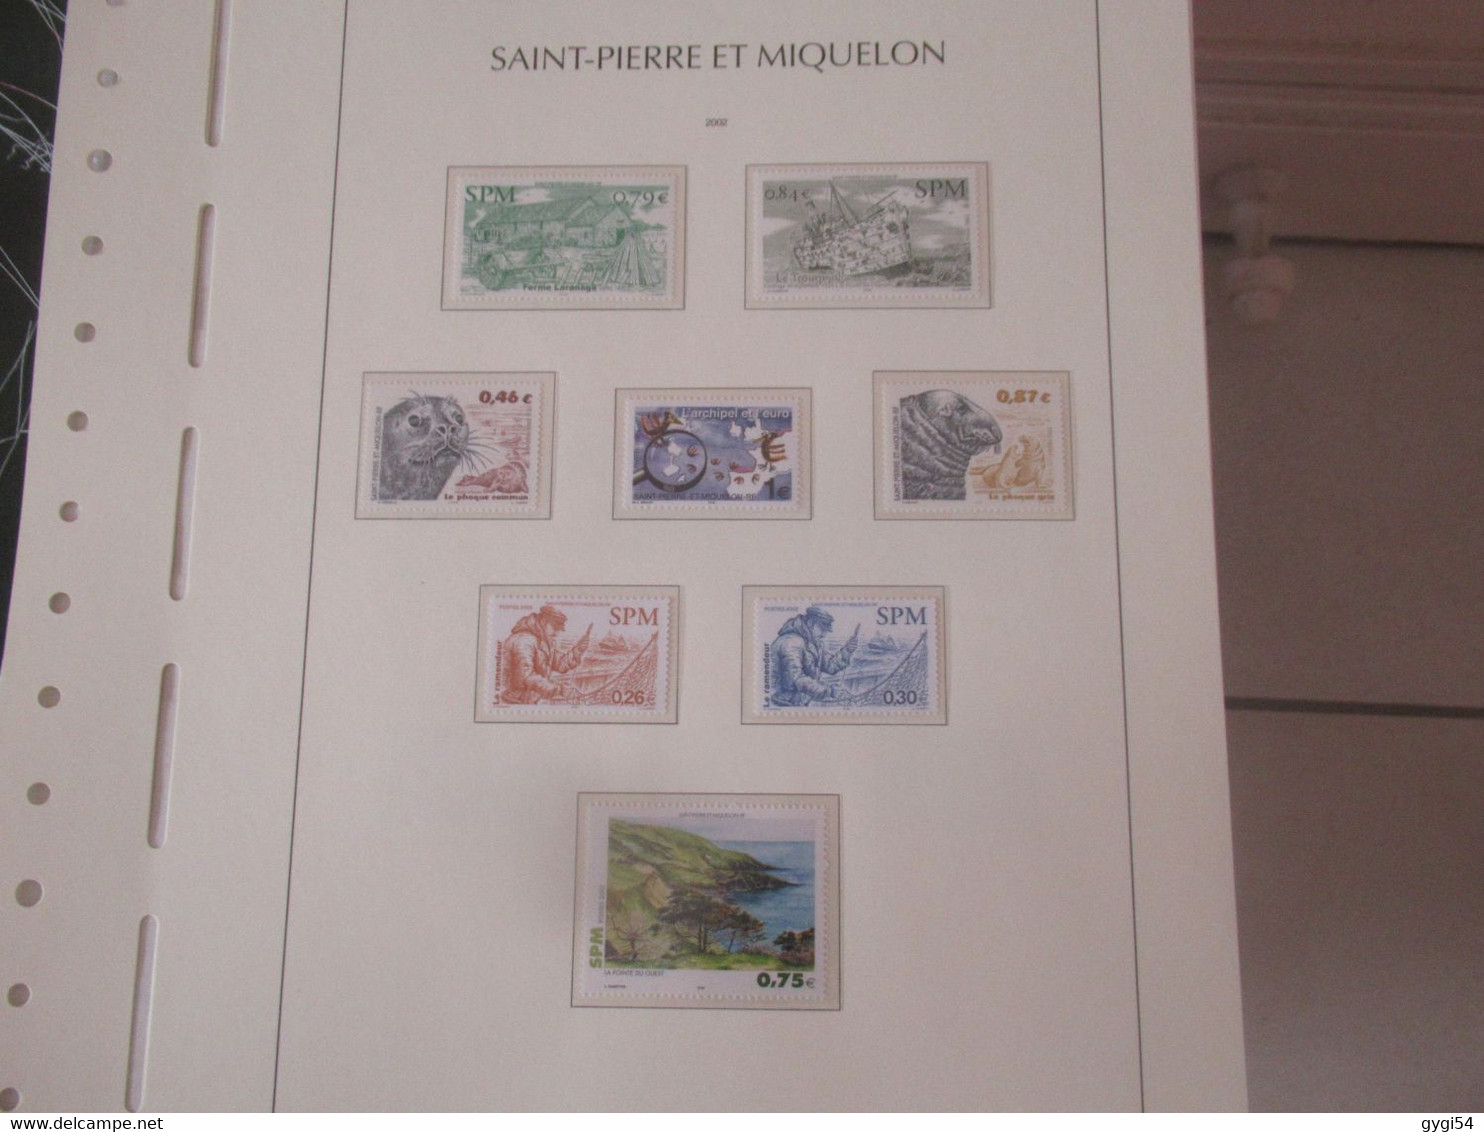 Saint-Pierre Et Miquelon - Année Complète - 2002   MNH - Full Years